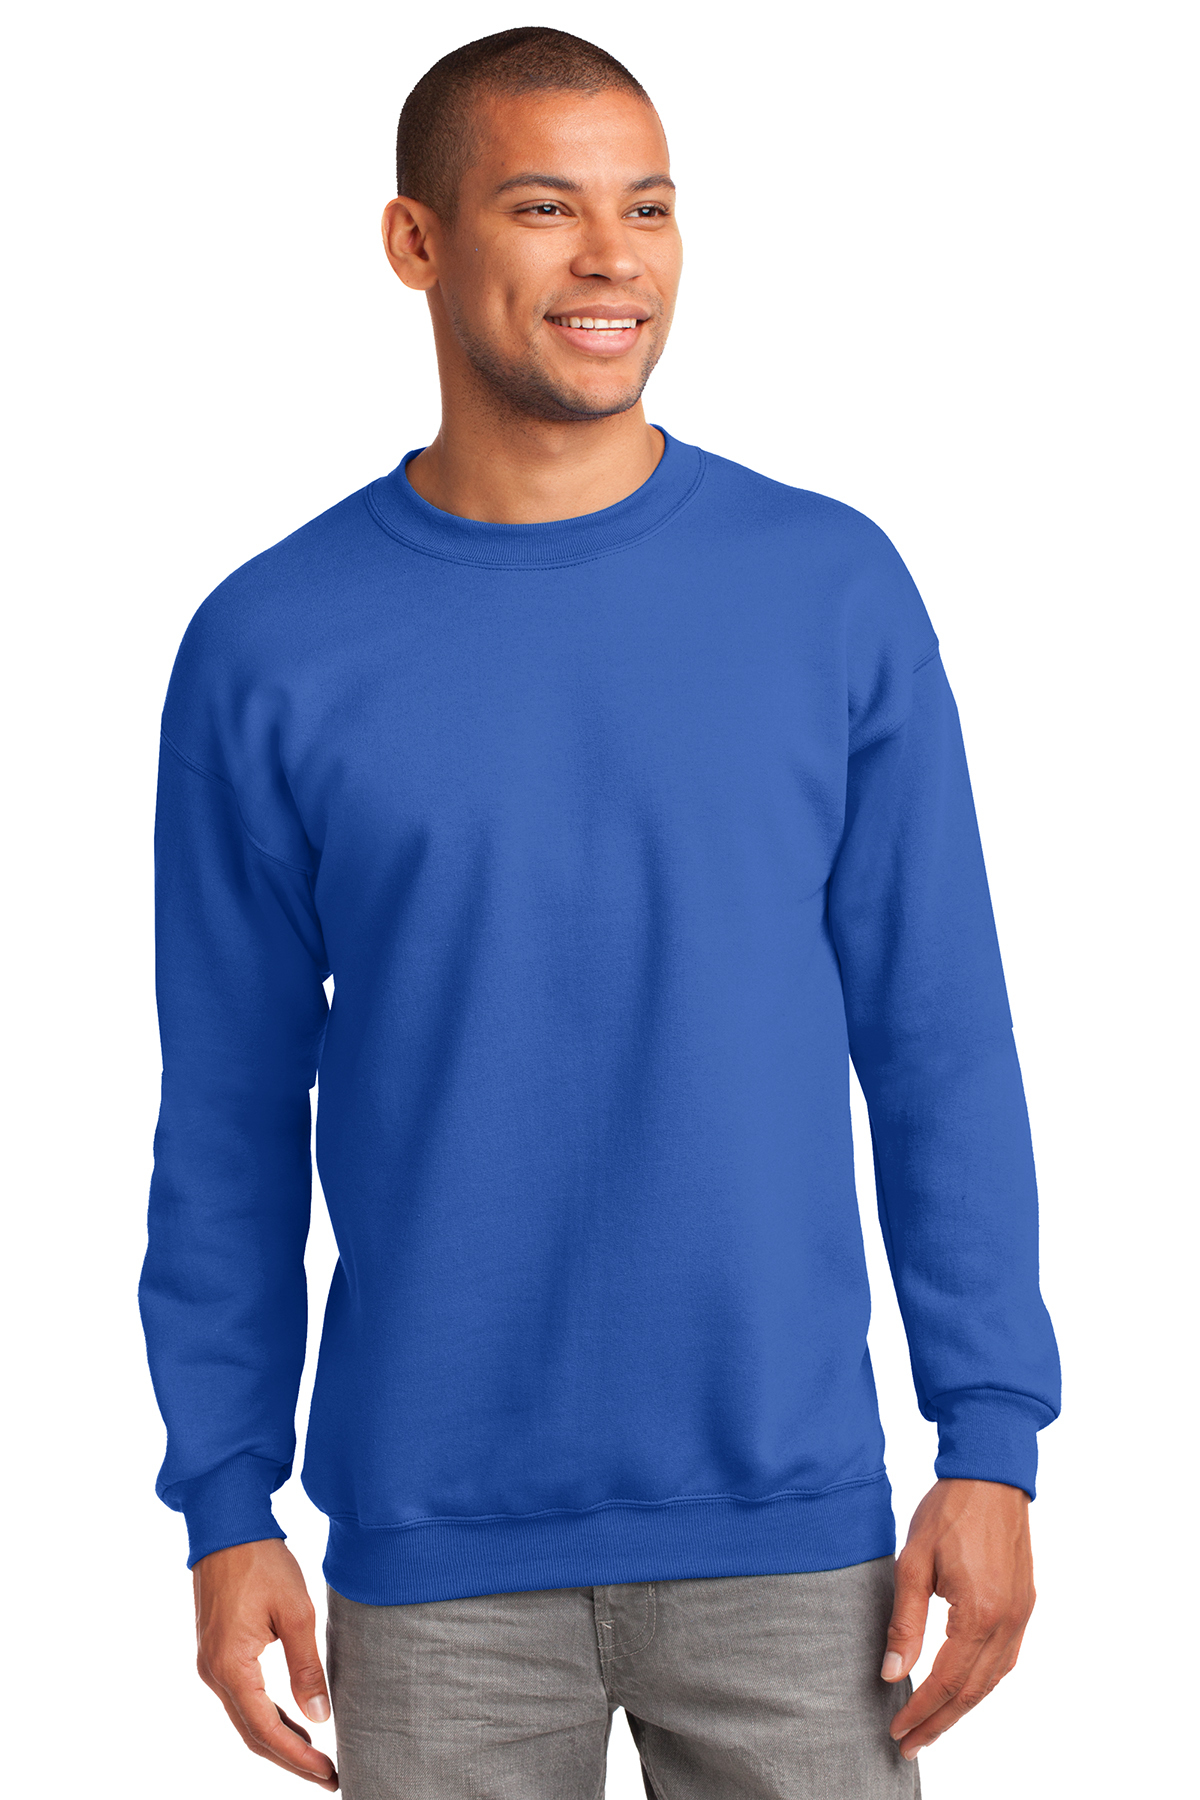 Sweatshirt-Royal Blue – TSE, Inc.